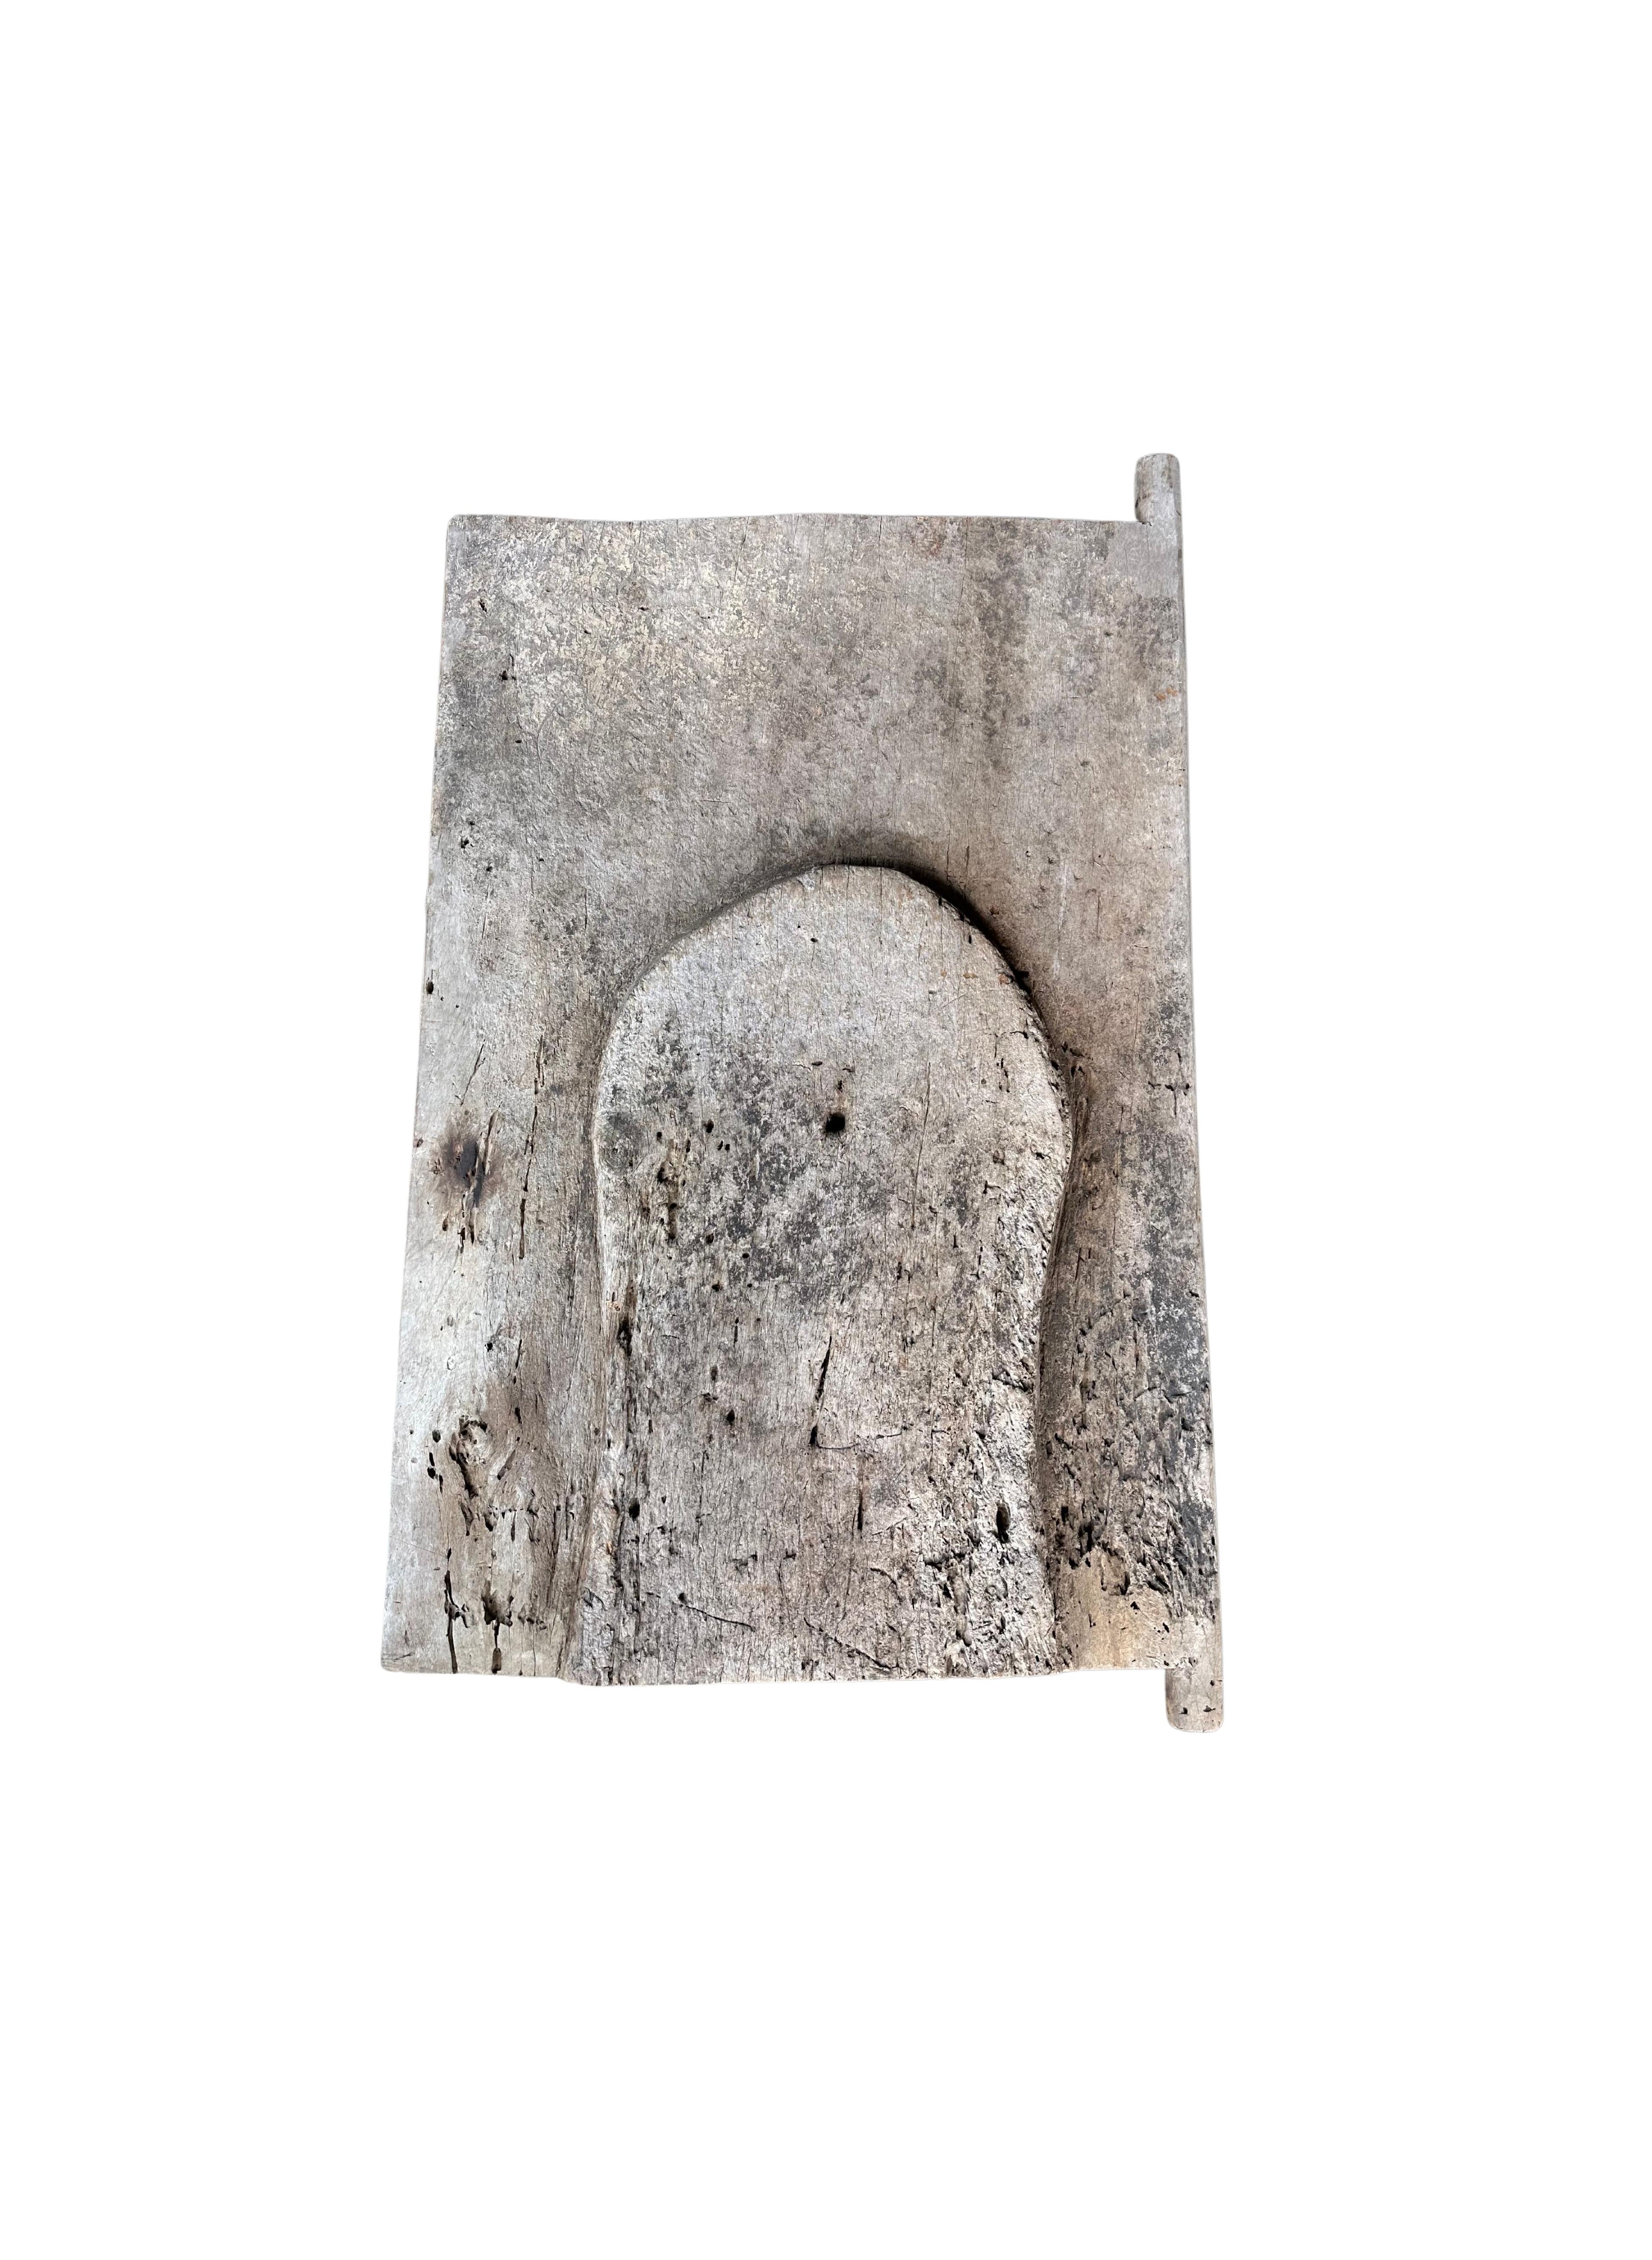 Porte de grenier à riz des tribus Batak du lac Toba, Sumatra central, Indonésie, vers 1900. Il présente une magnifique patine liée à l'âge, avec des textures et des nuances de bois très marquées. Un objet sculptural unique qui apporte de la chaleur